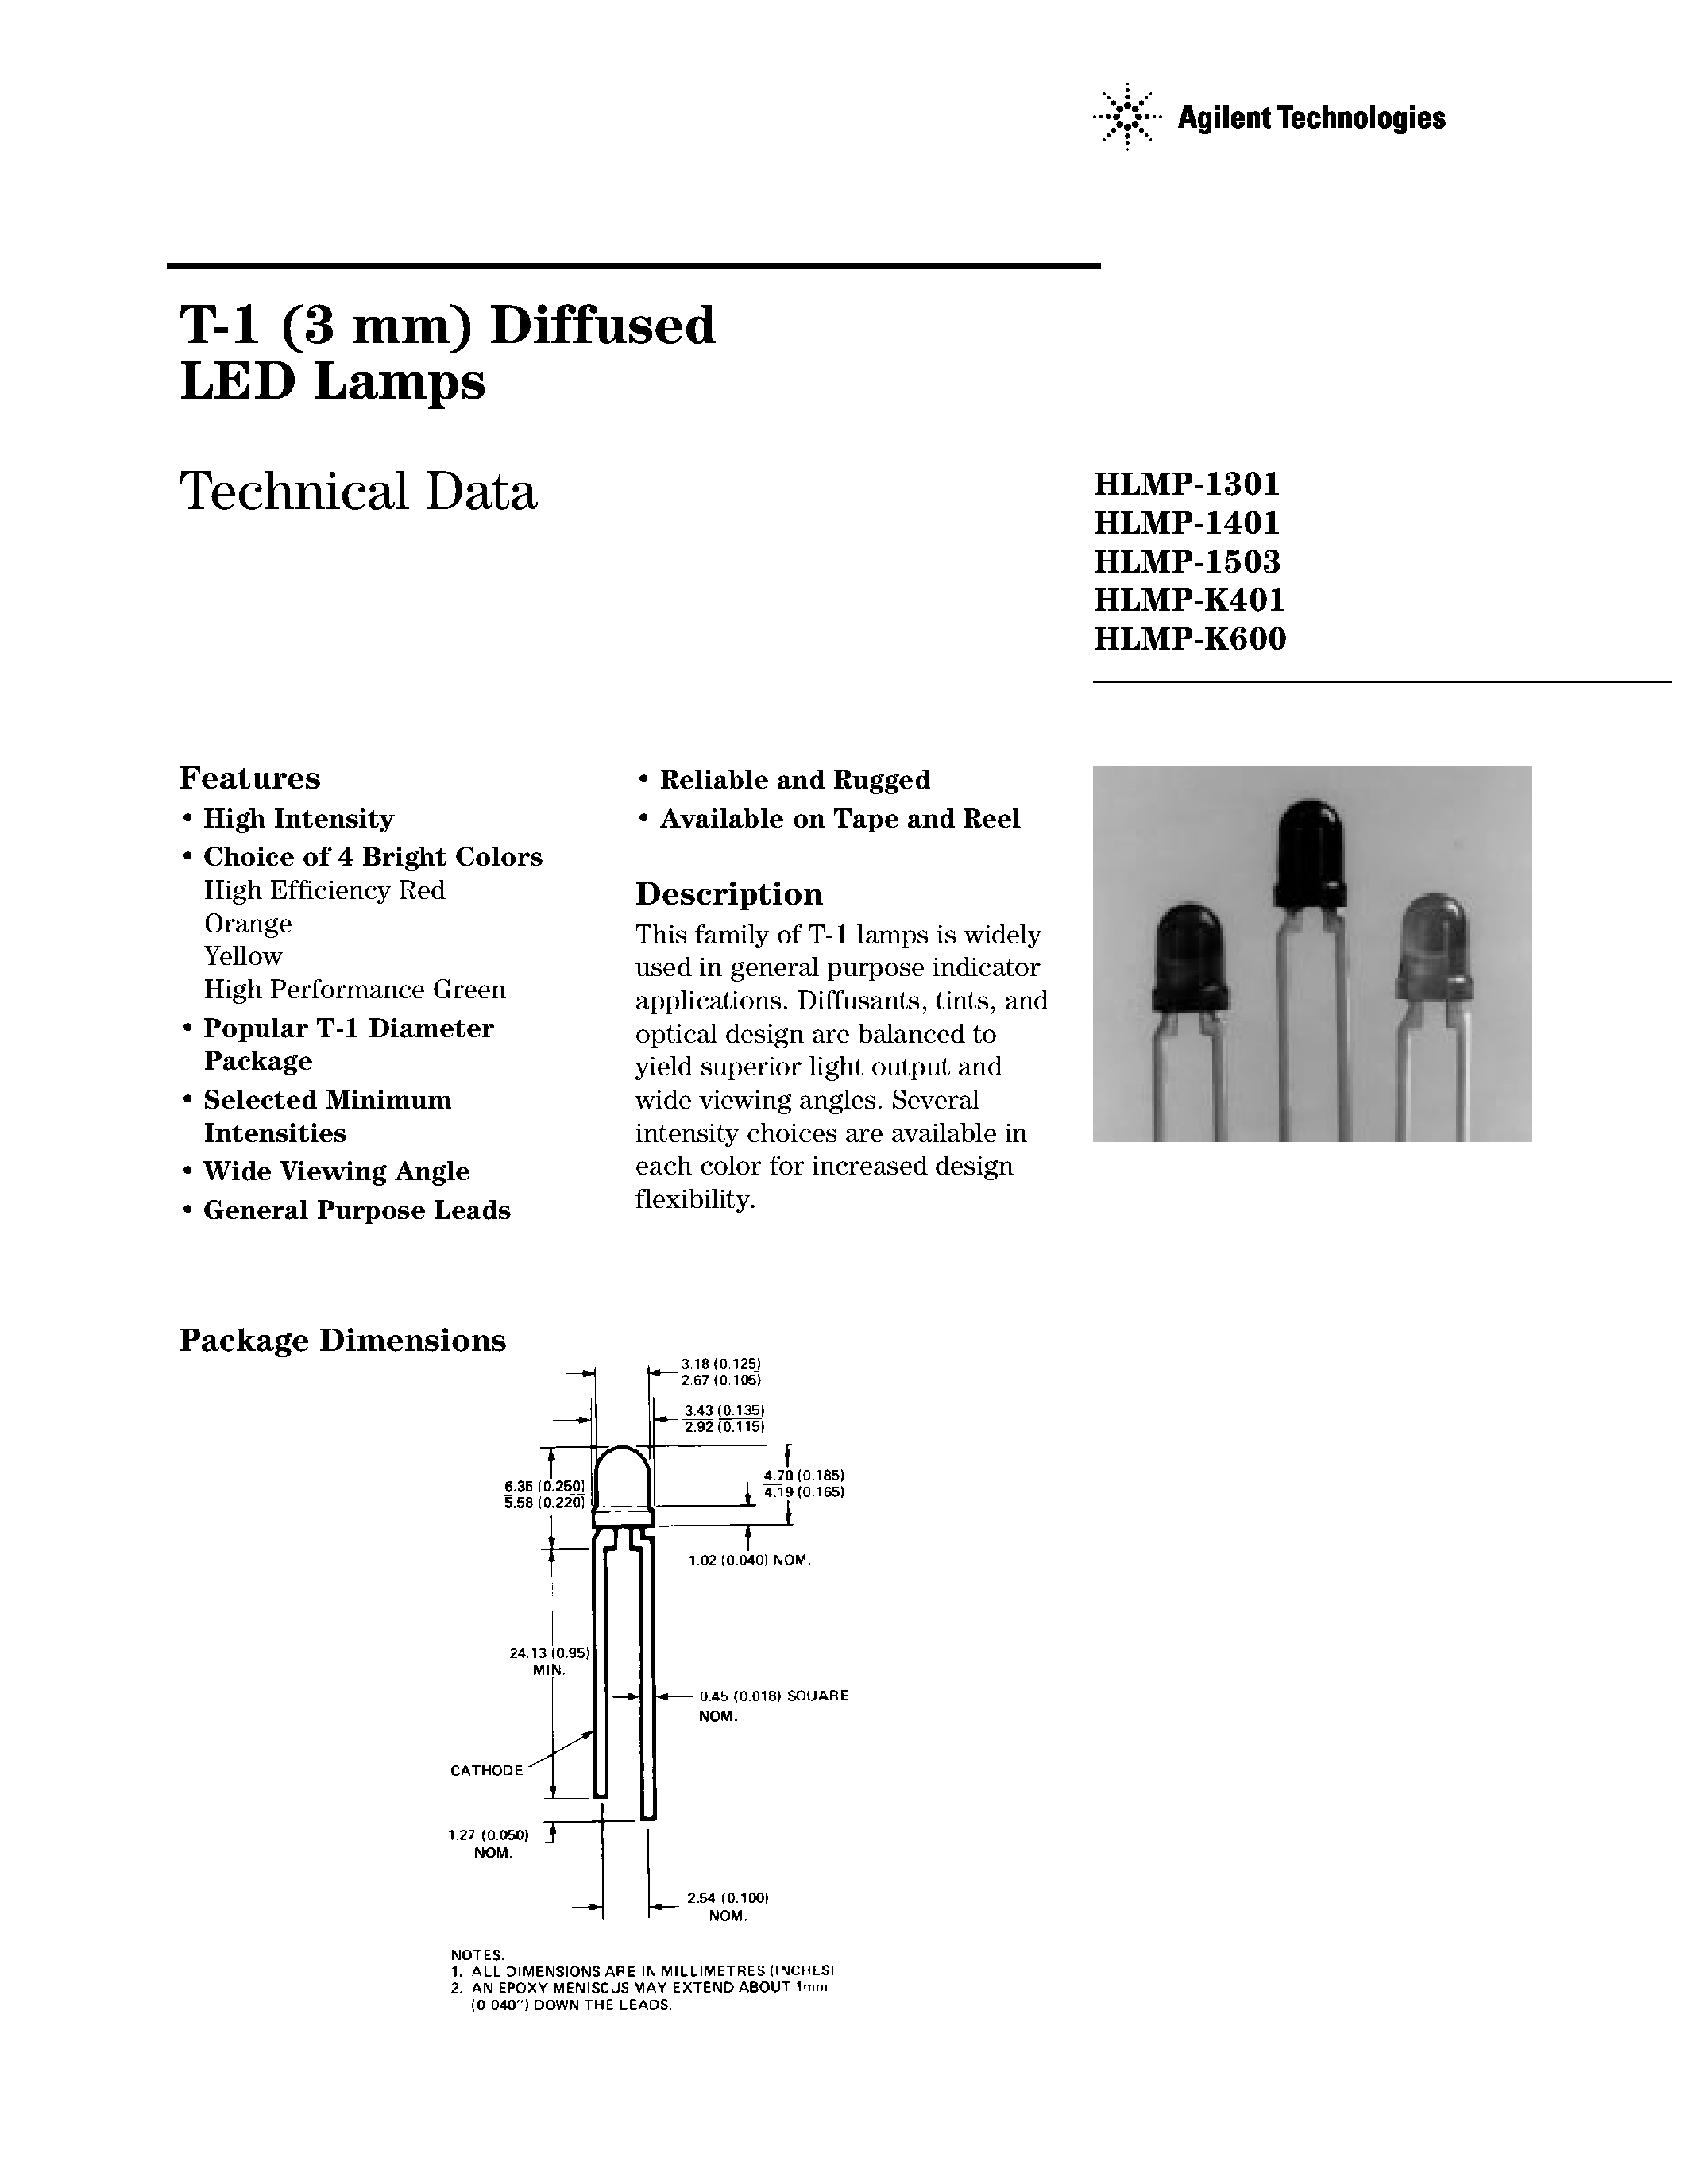 Даташит HLMP1301 - T-1 Diffused LED Lamps страница 1